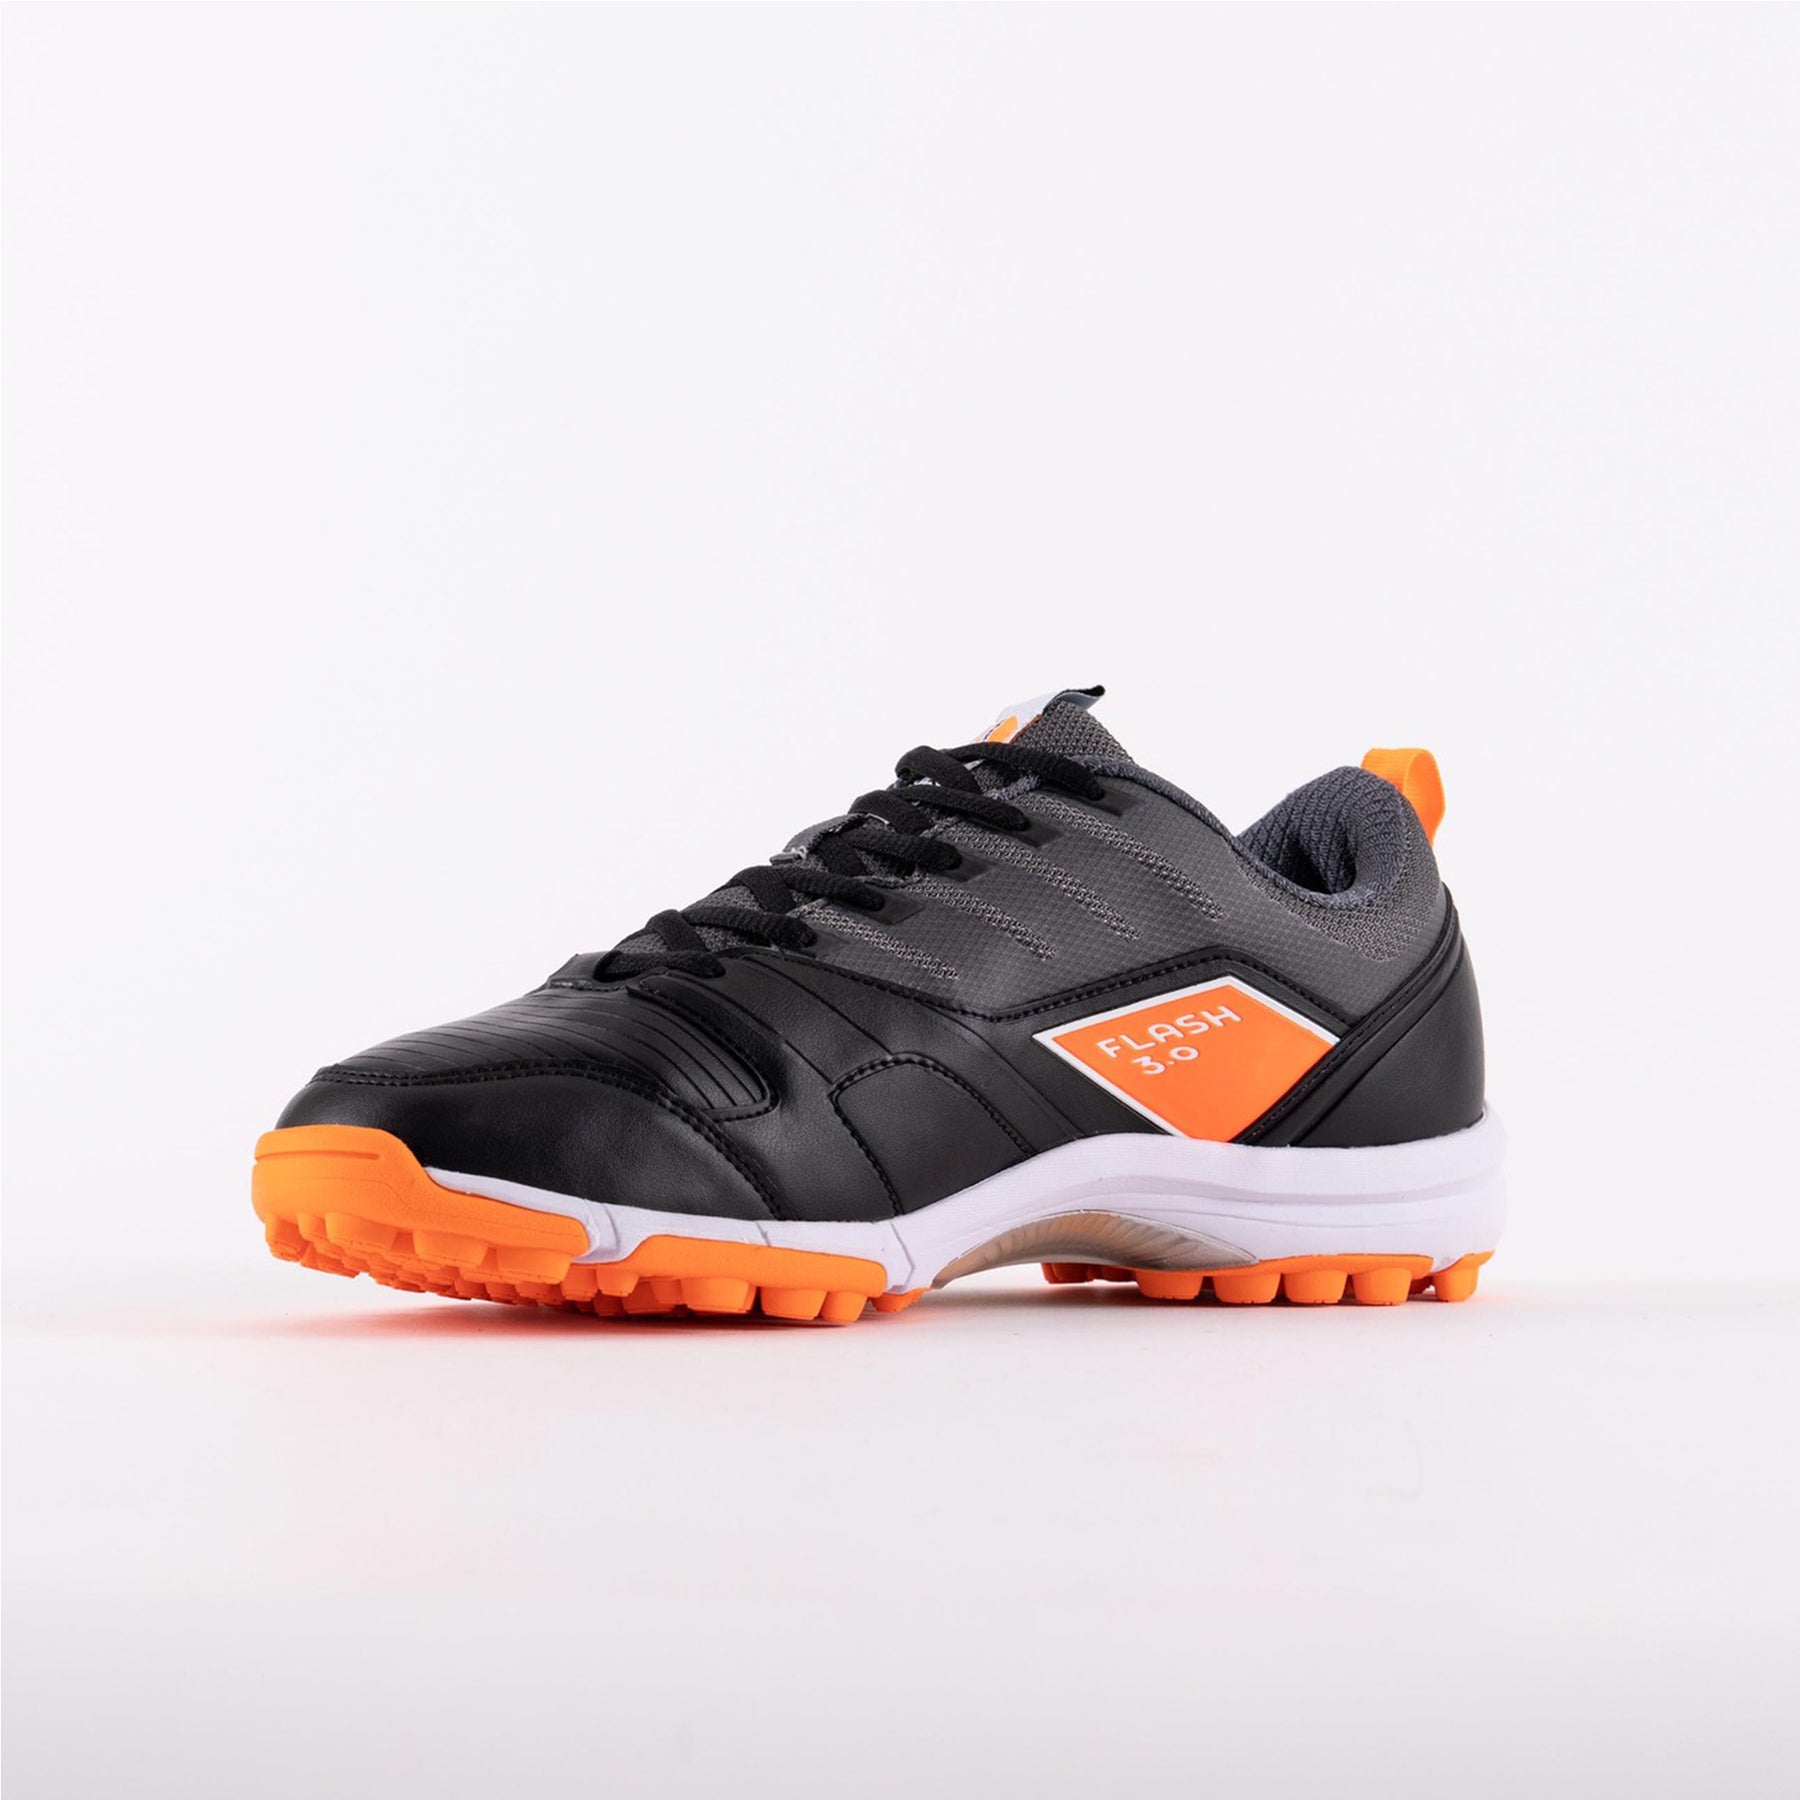 Grays Flash 3.0 Hockey Shoes: Black/Orange